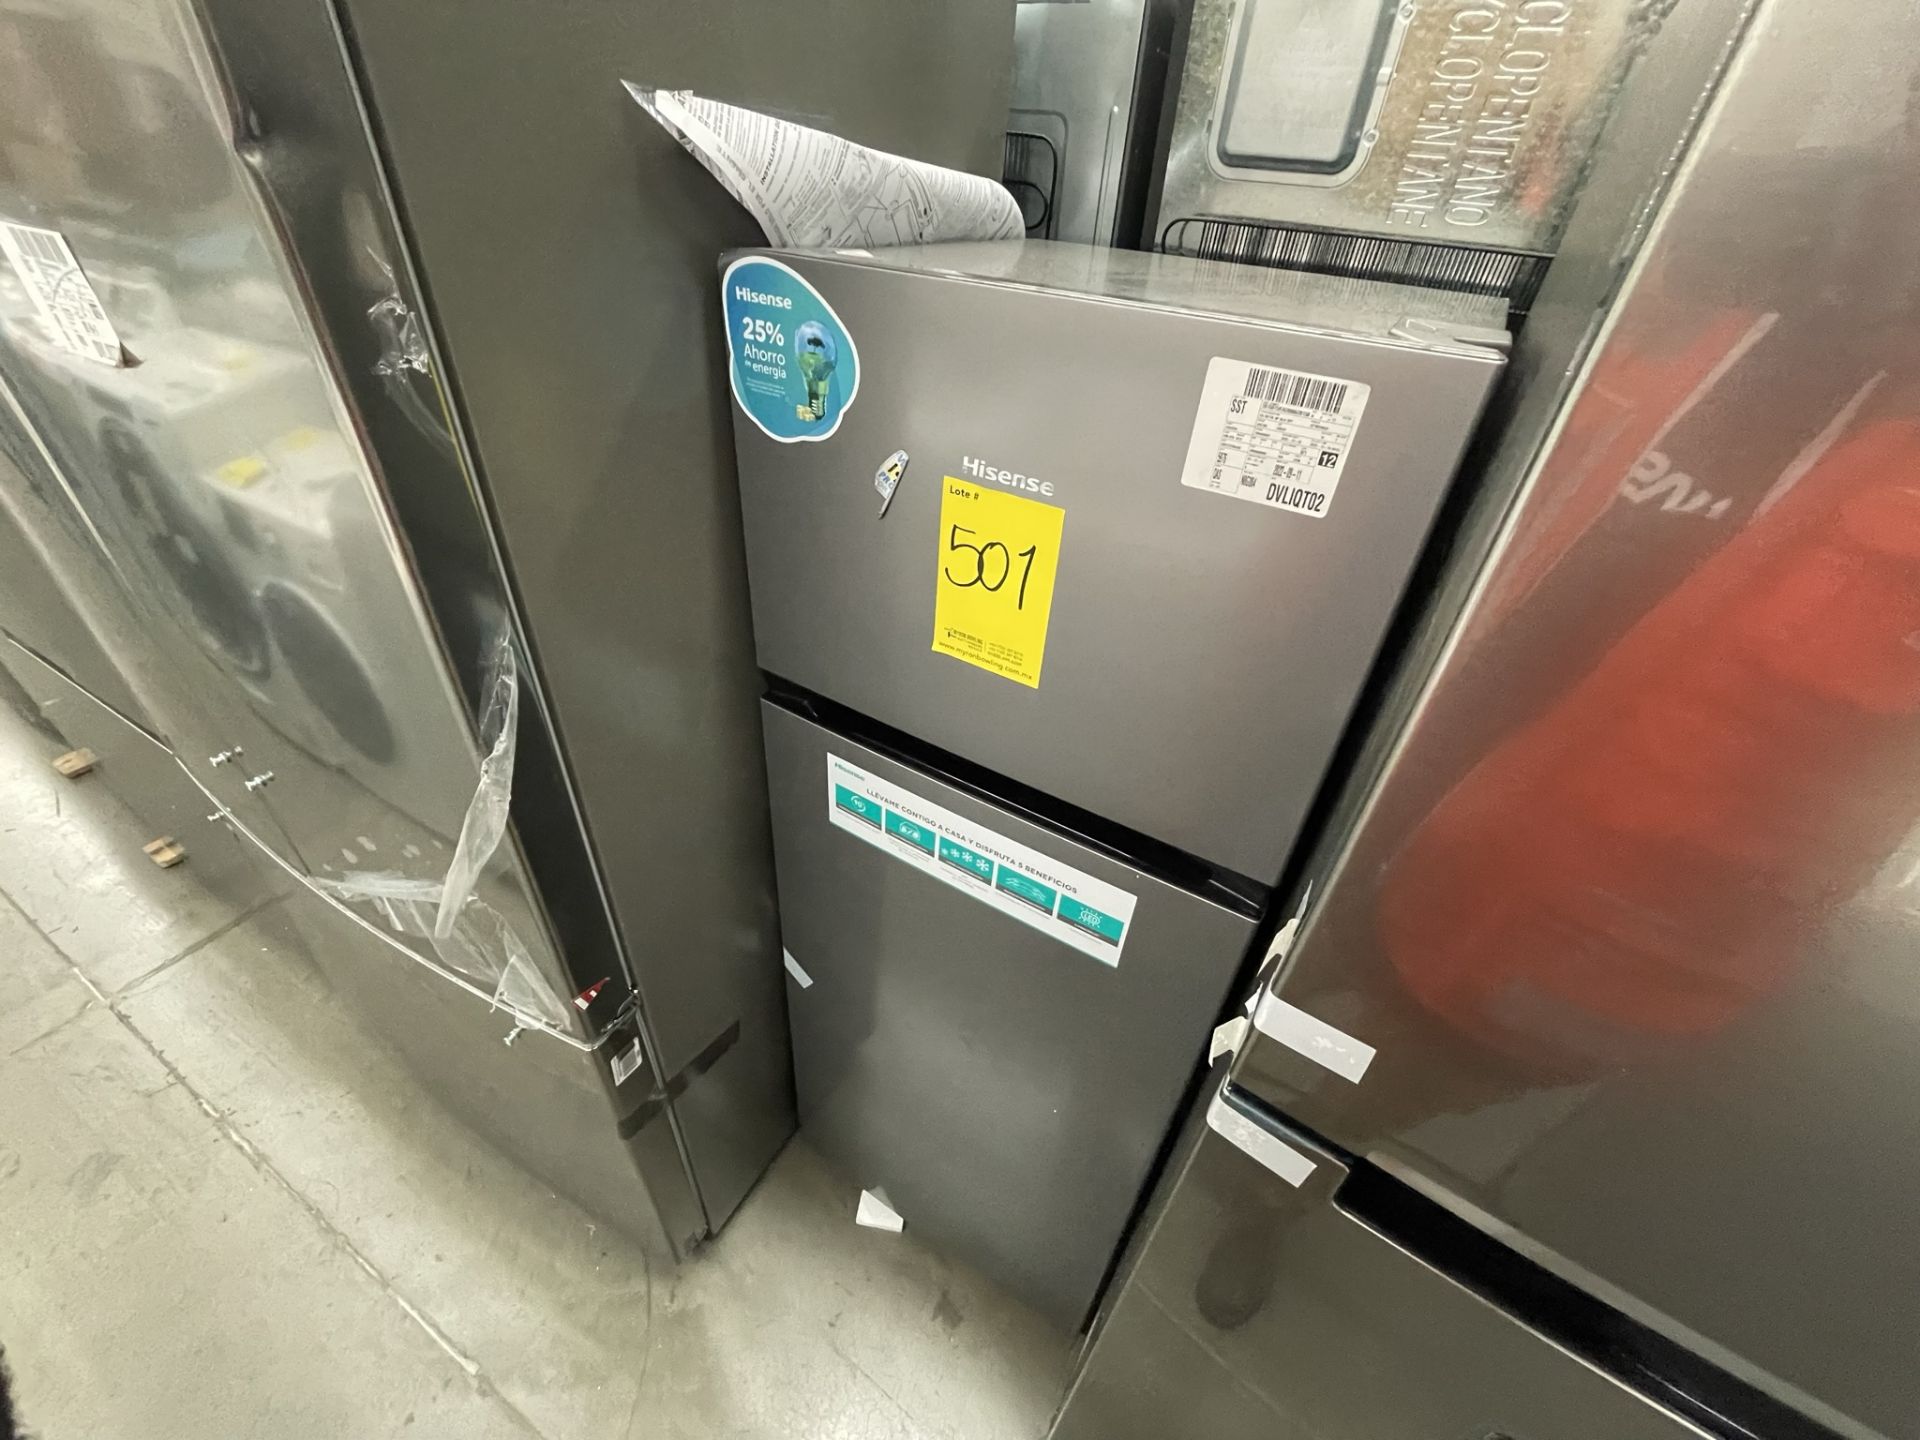 (EQUIPO NUEVO) Lote De 2 Refrigeradores Contiene: 1 Refrigerador Marca LG, Modelo GM29BP, Serie208M - Image 11 of 16